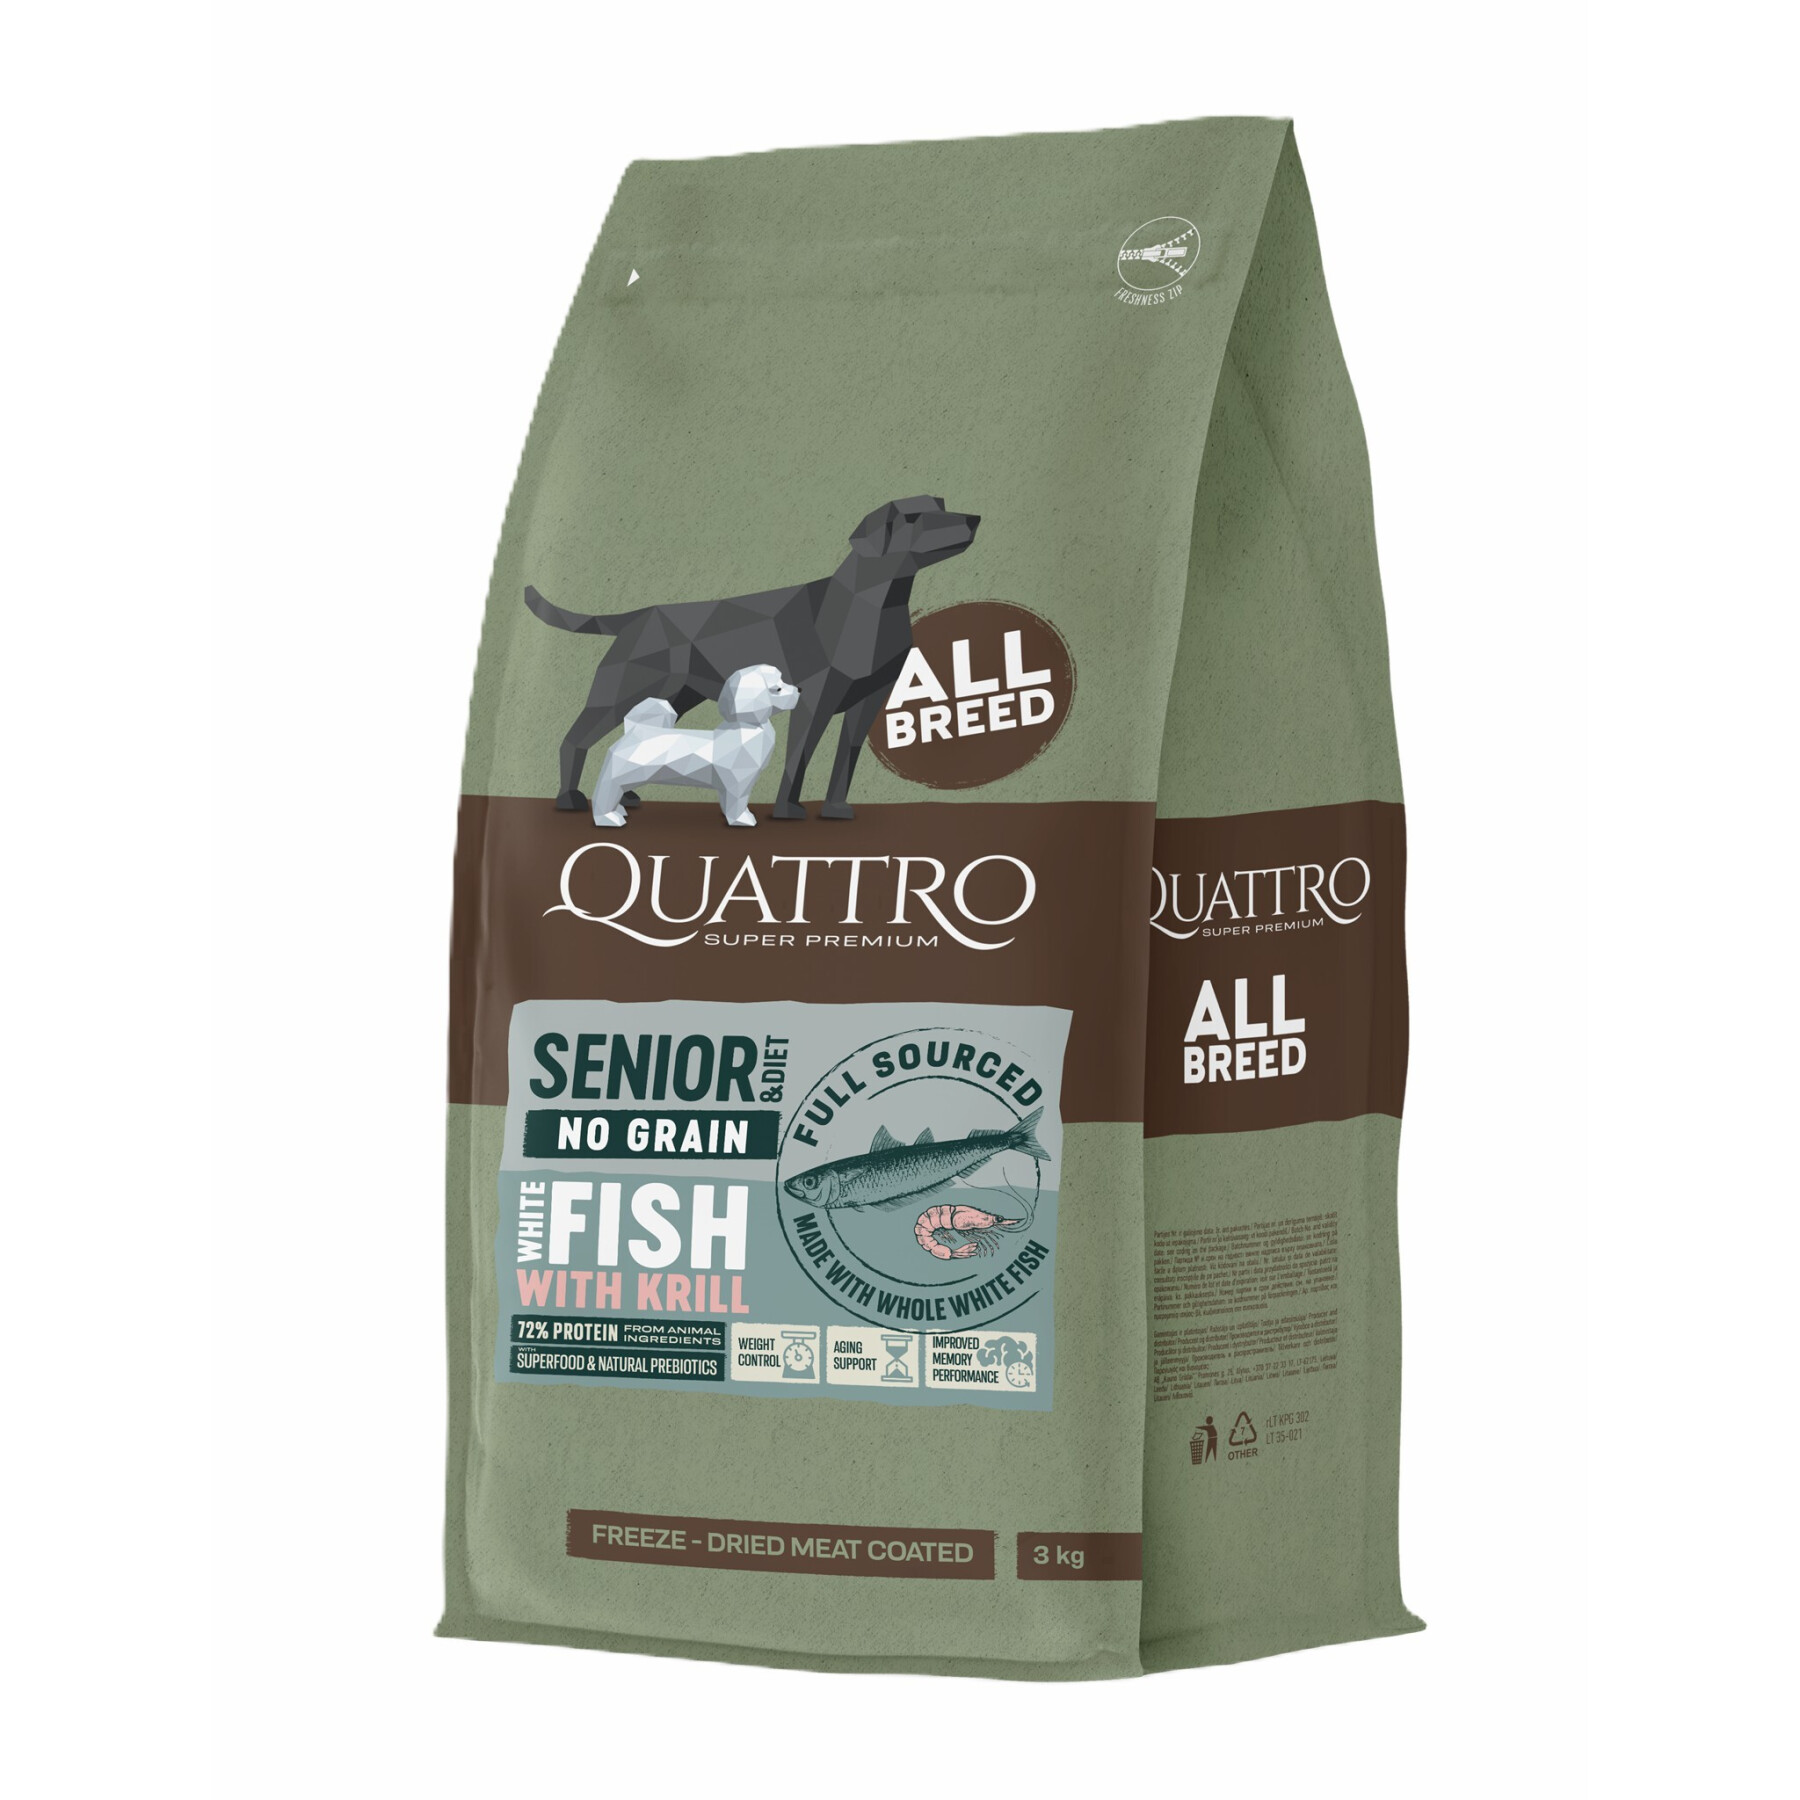 Hundekroketten für alle Rassen ohne Getreide Weißfisch und Krill BUBU Pets Quatro Super Premium